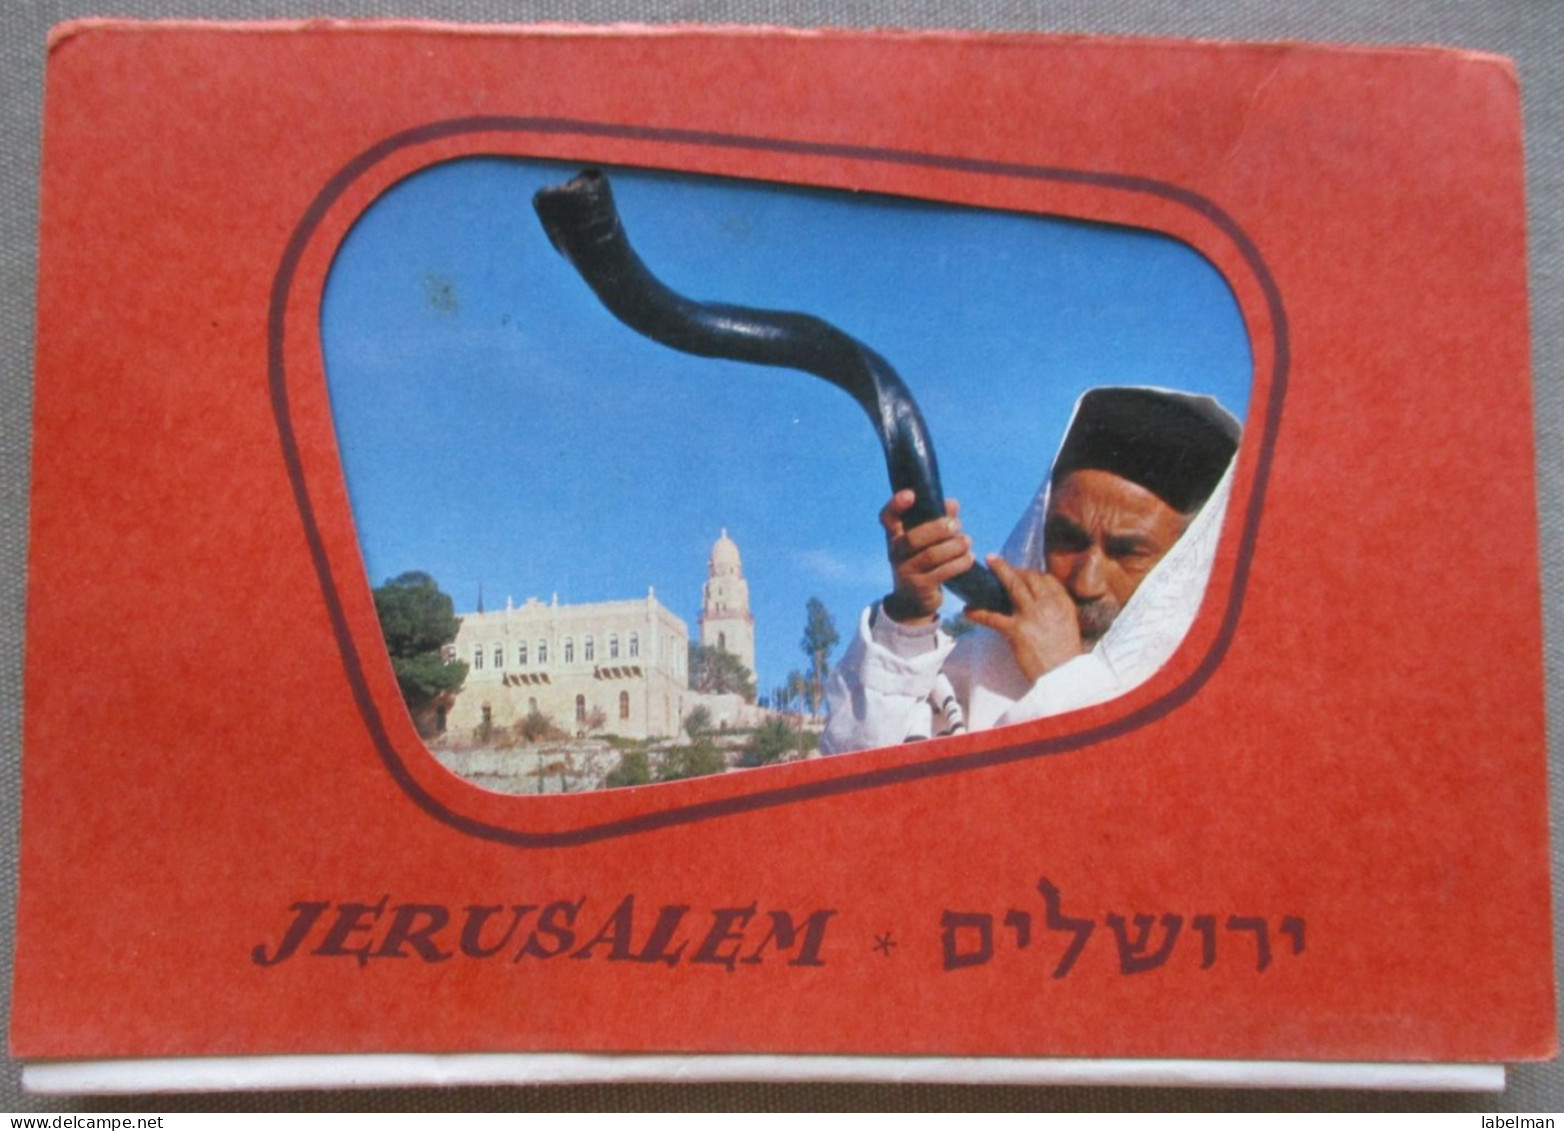 ISRAEL JERUSALEM POSTCARD ANSICHTSKARTE CARTOLINA CARTE POSTALE POSTKARTE BOOKLET SET BROCHURE LOT - Israele